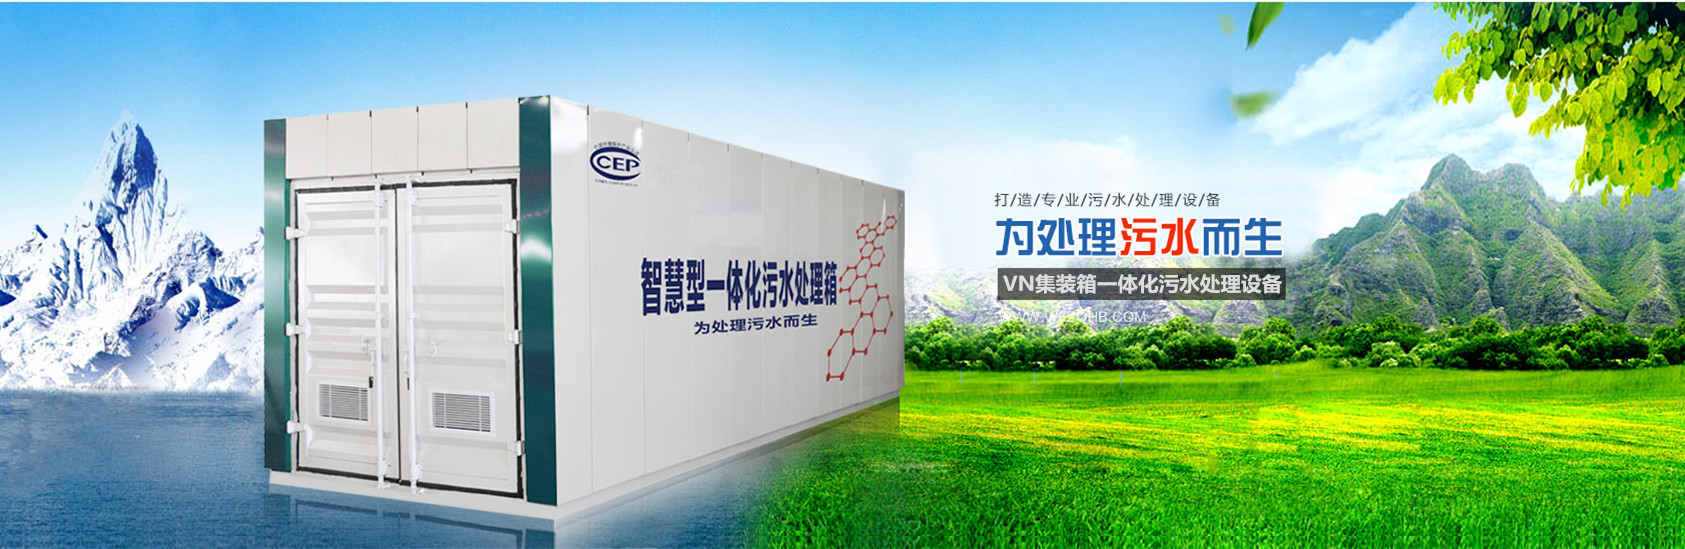 实验室污水处理设备、陕西本地实验室污水处理设备、陕西、陕西实验室污水处理设备